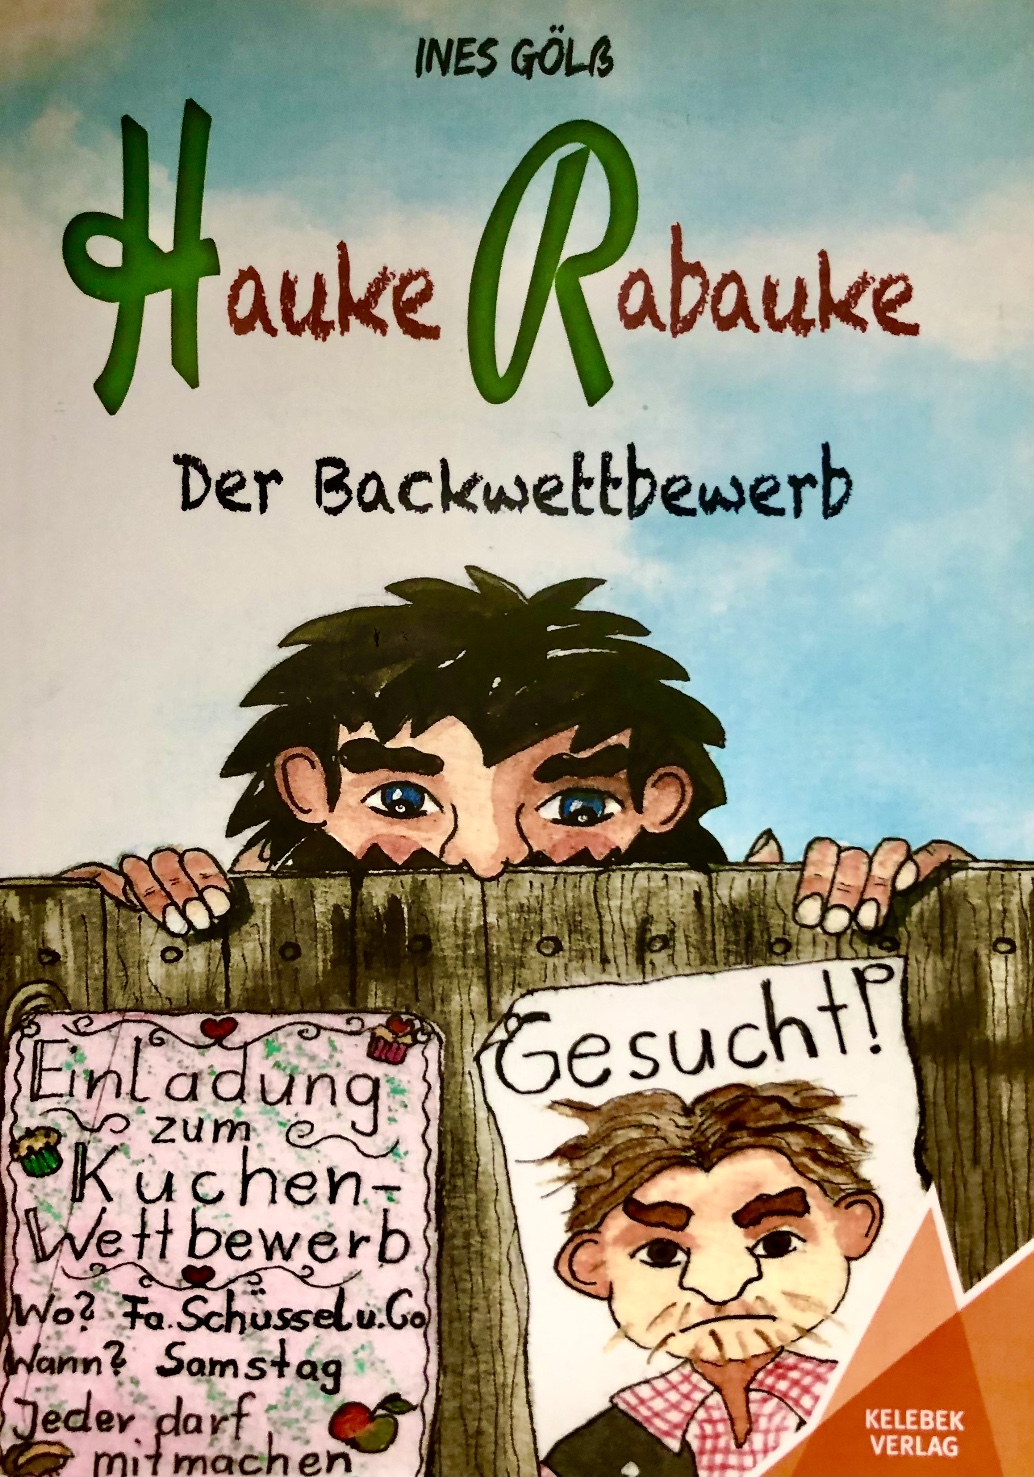 Die österreichische Schriftstellerin Ines Gölß stellt ihren jungen Räuberheld Hauke Rabauke vor harte Prüfungen...!